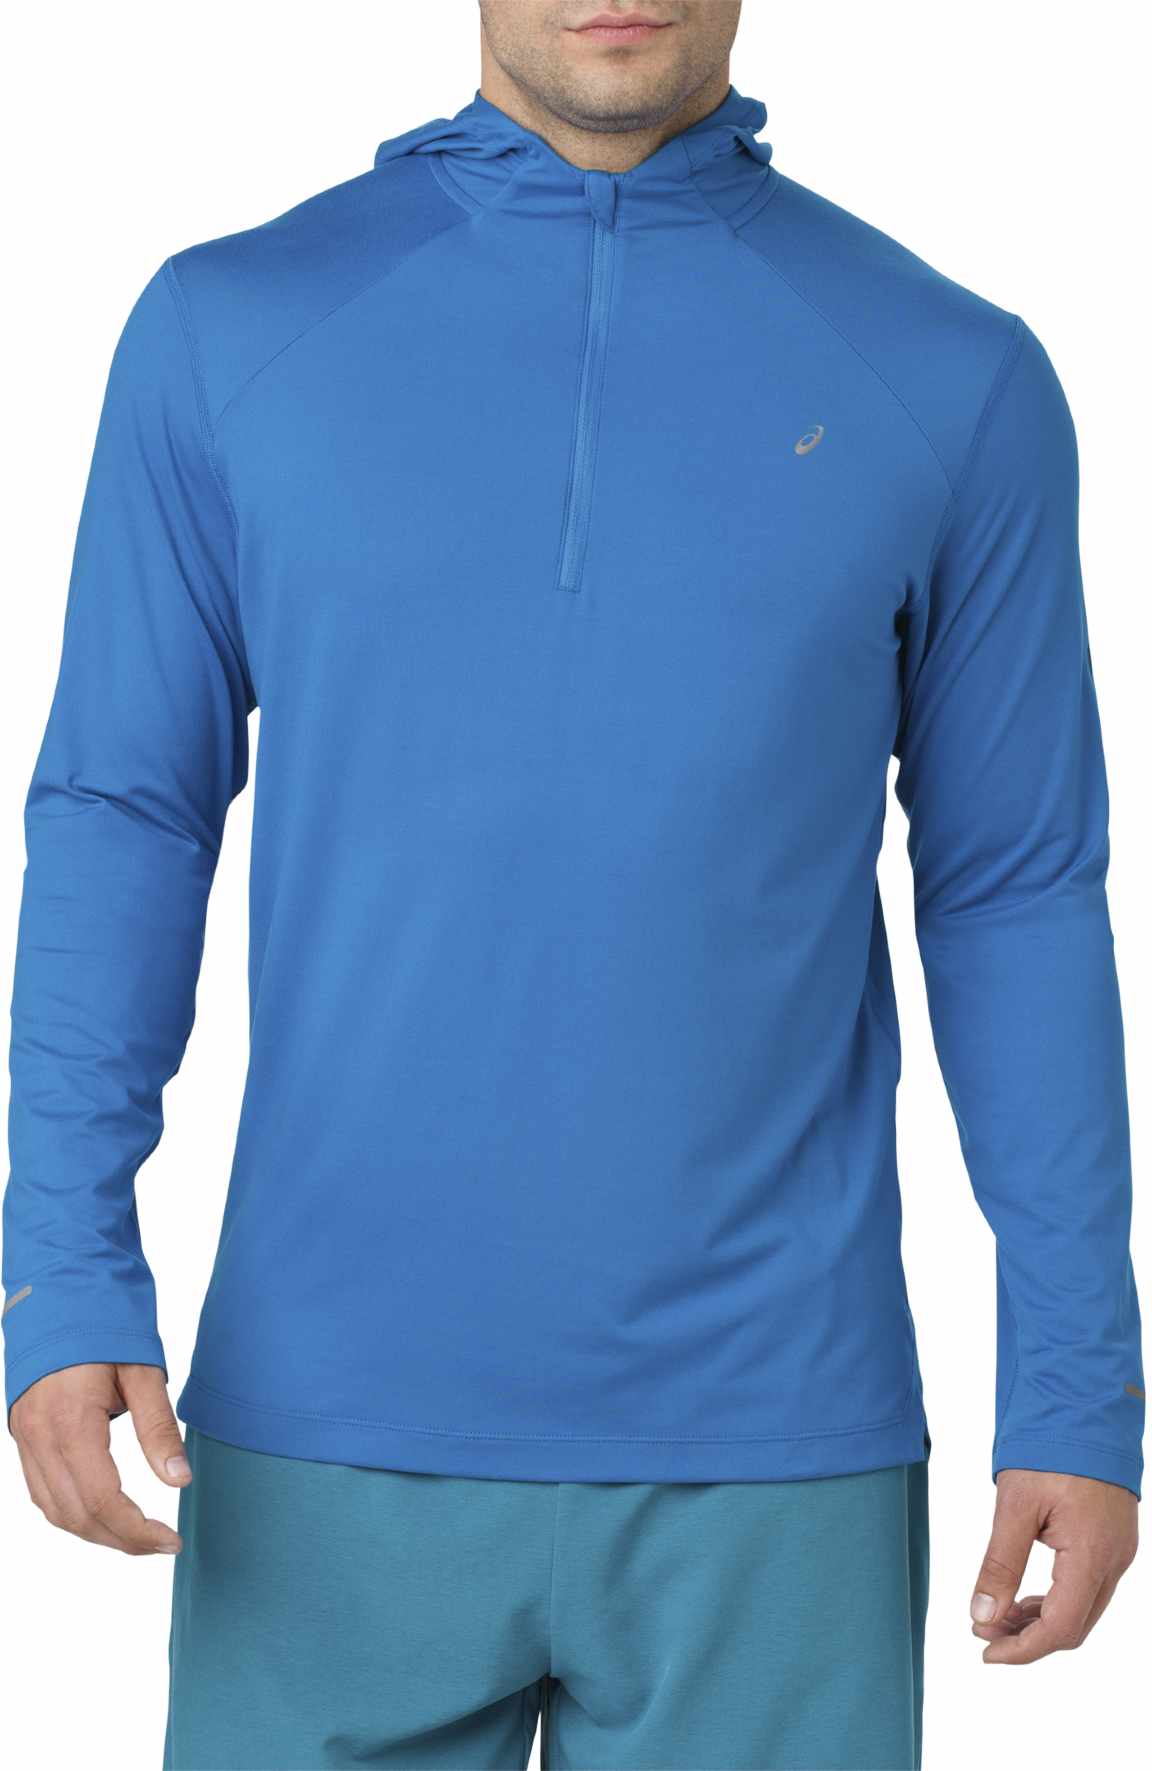 Men’s running sweatshirt